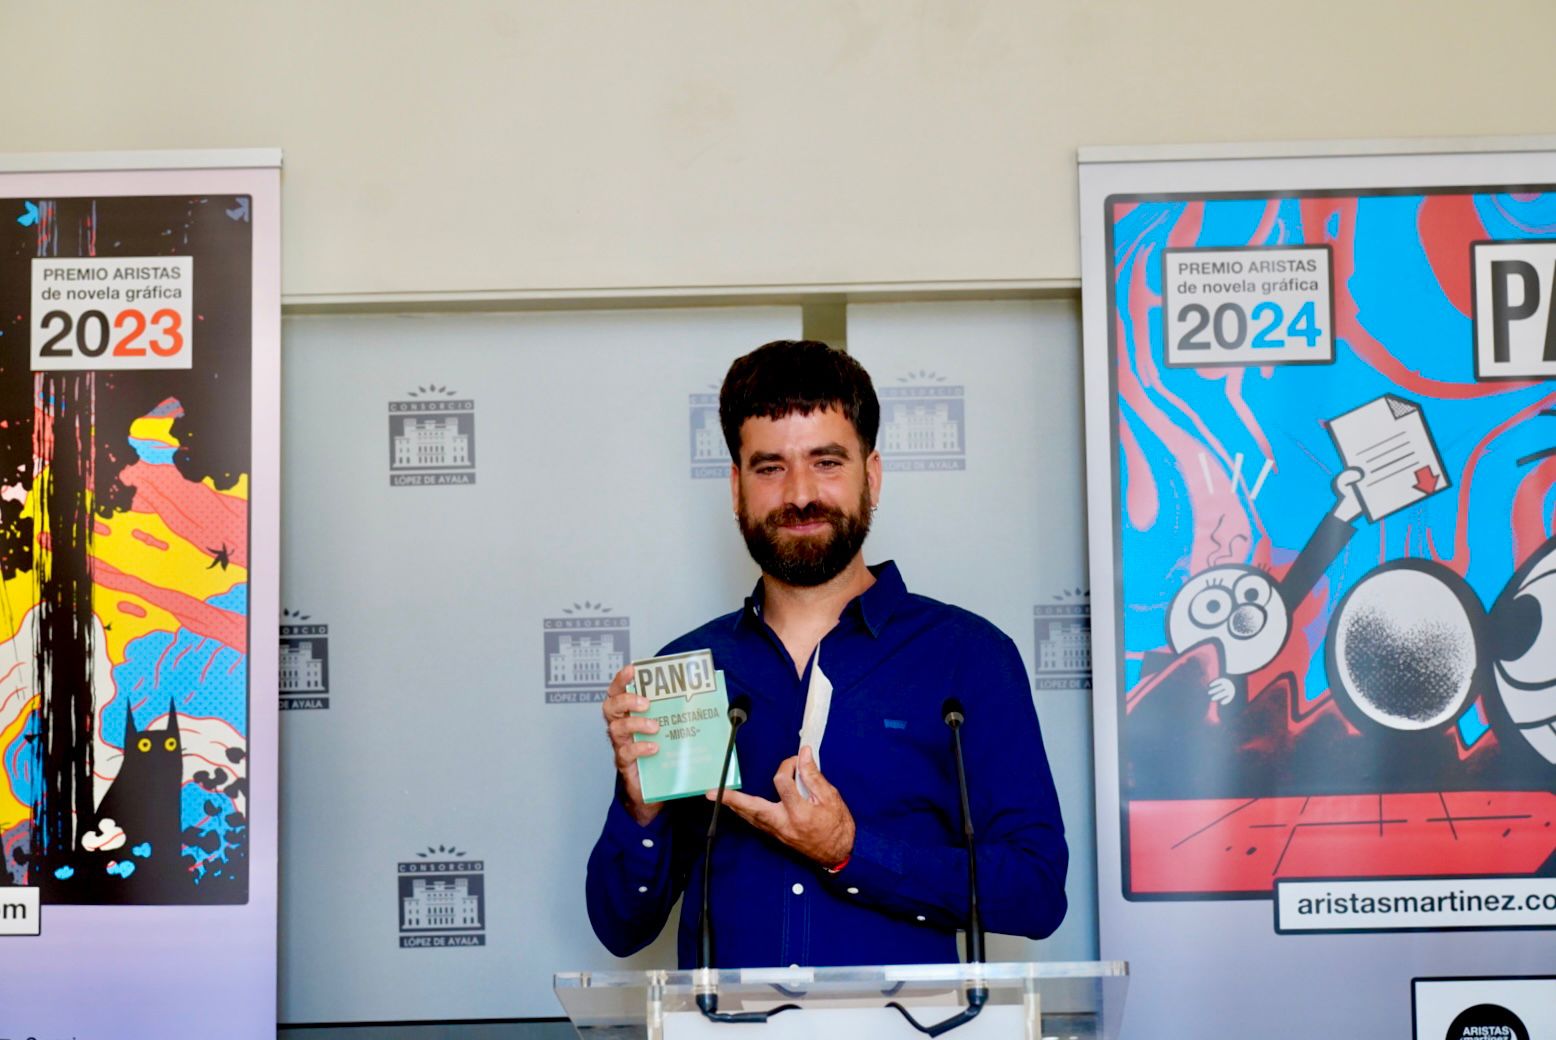 Image 5 of article Javier Castañeda recibe el premio PANG! de novela gráfica patrocinado por la Fundación Extremeña de la Cultura